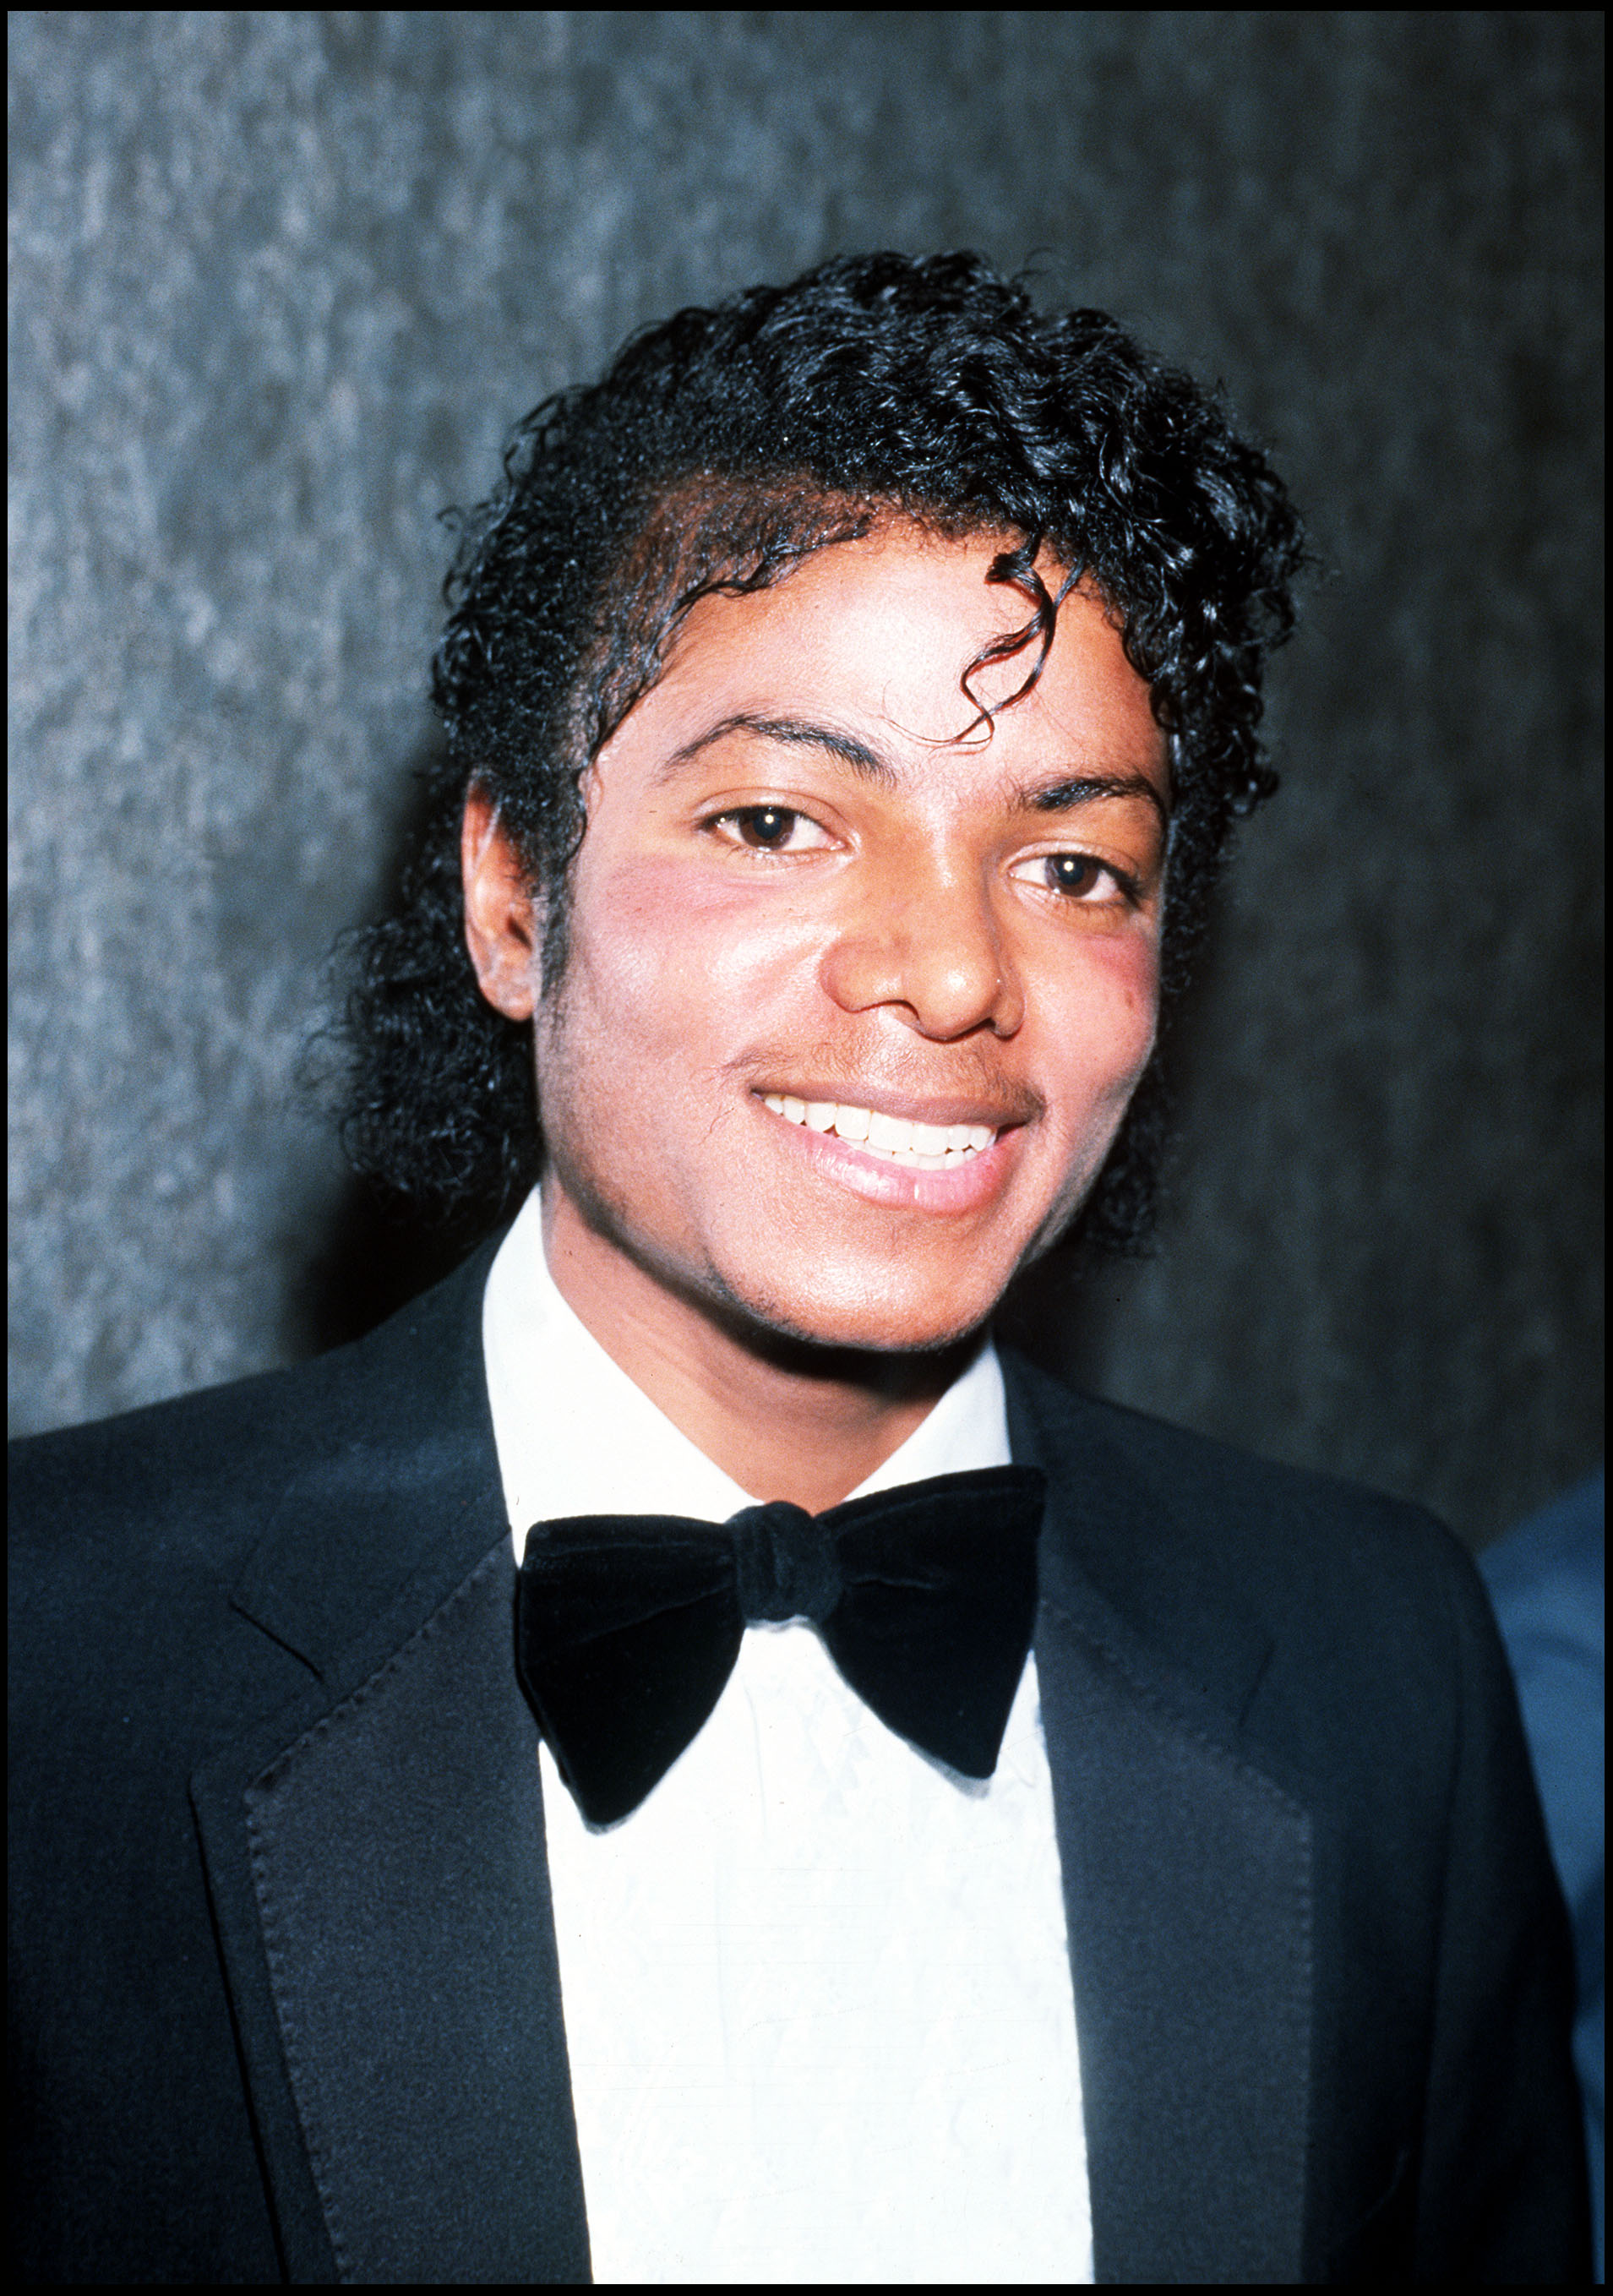 Michael Jackson lors de la remise des prix BPI le 8 février 1983 à Londres. | Source : Getty Images